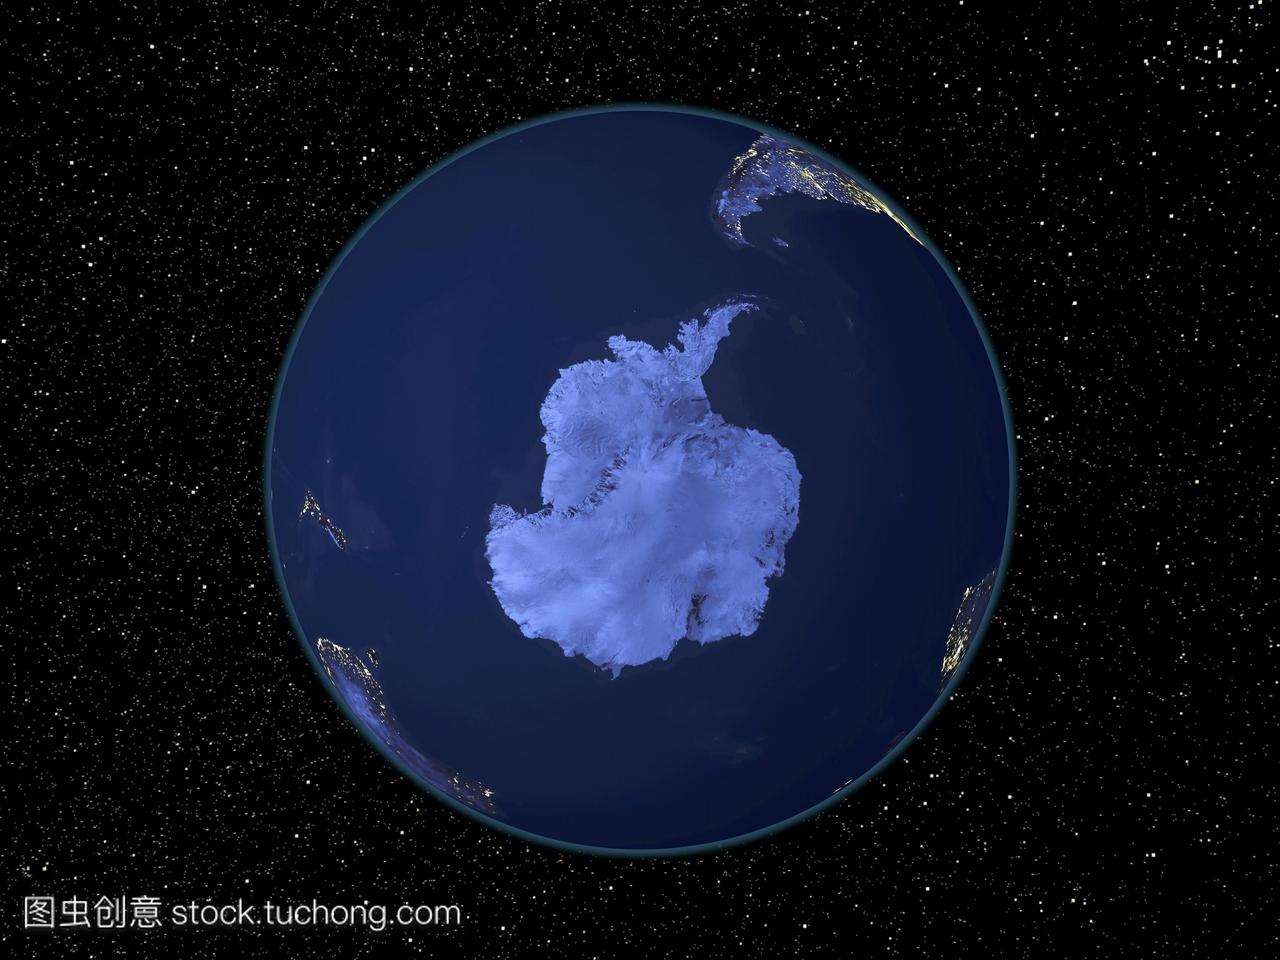 晚上南极洲。卫星图像在夜间,以恒星为背景,以